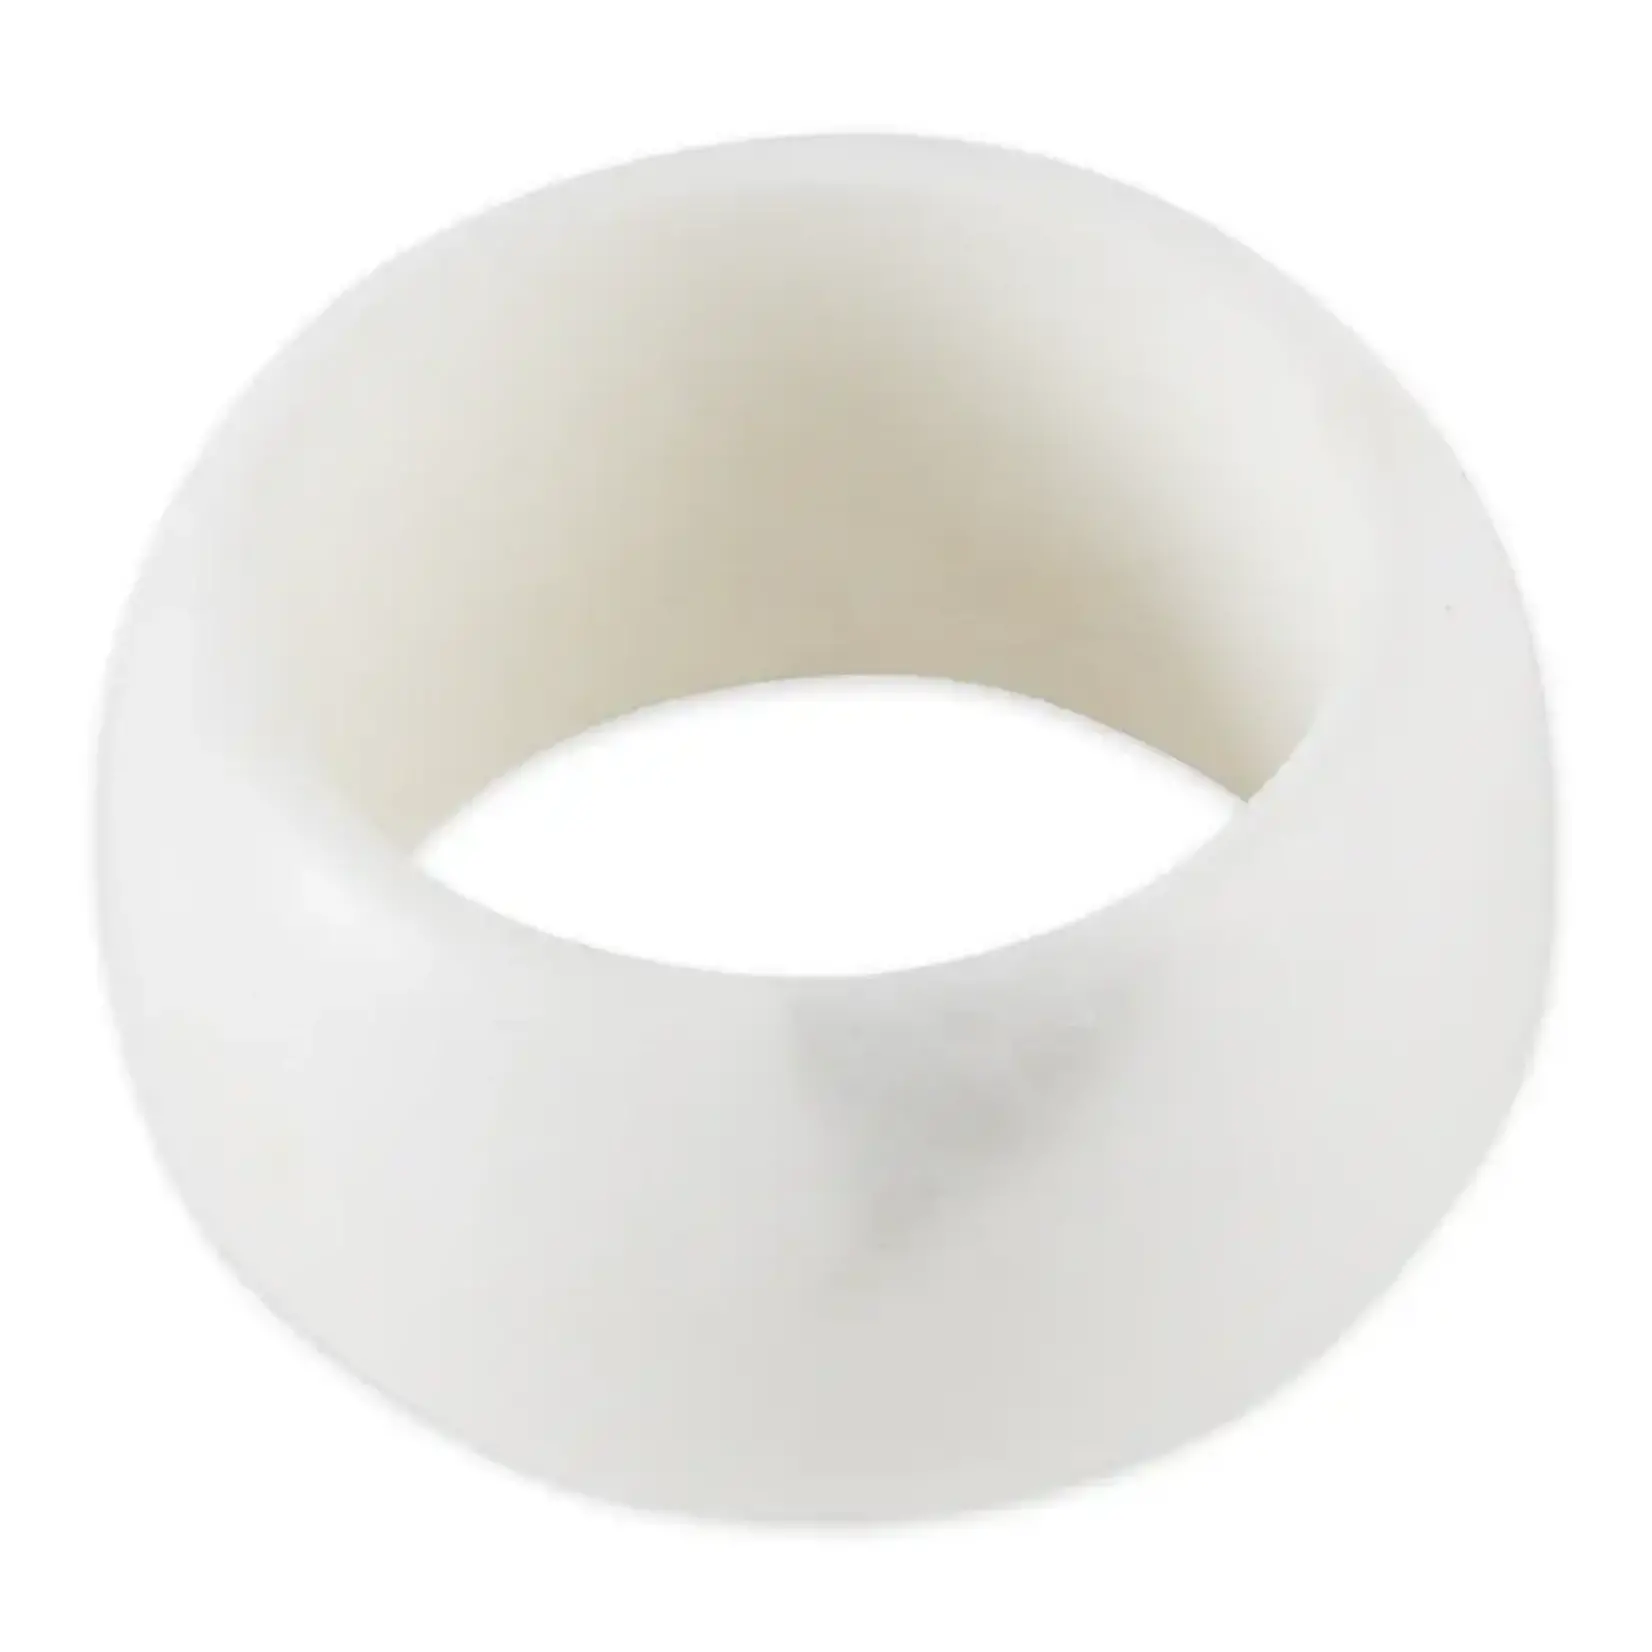 Design Imports Marble Band Napkin Ring Set of 4